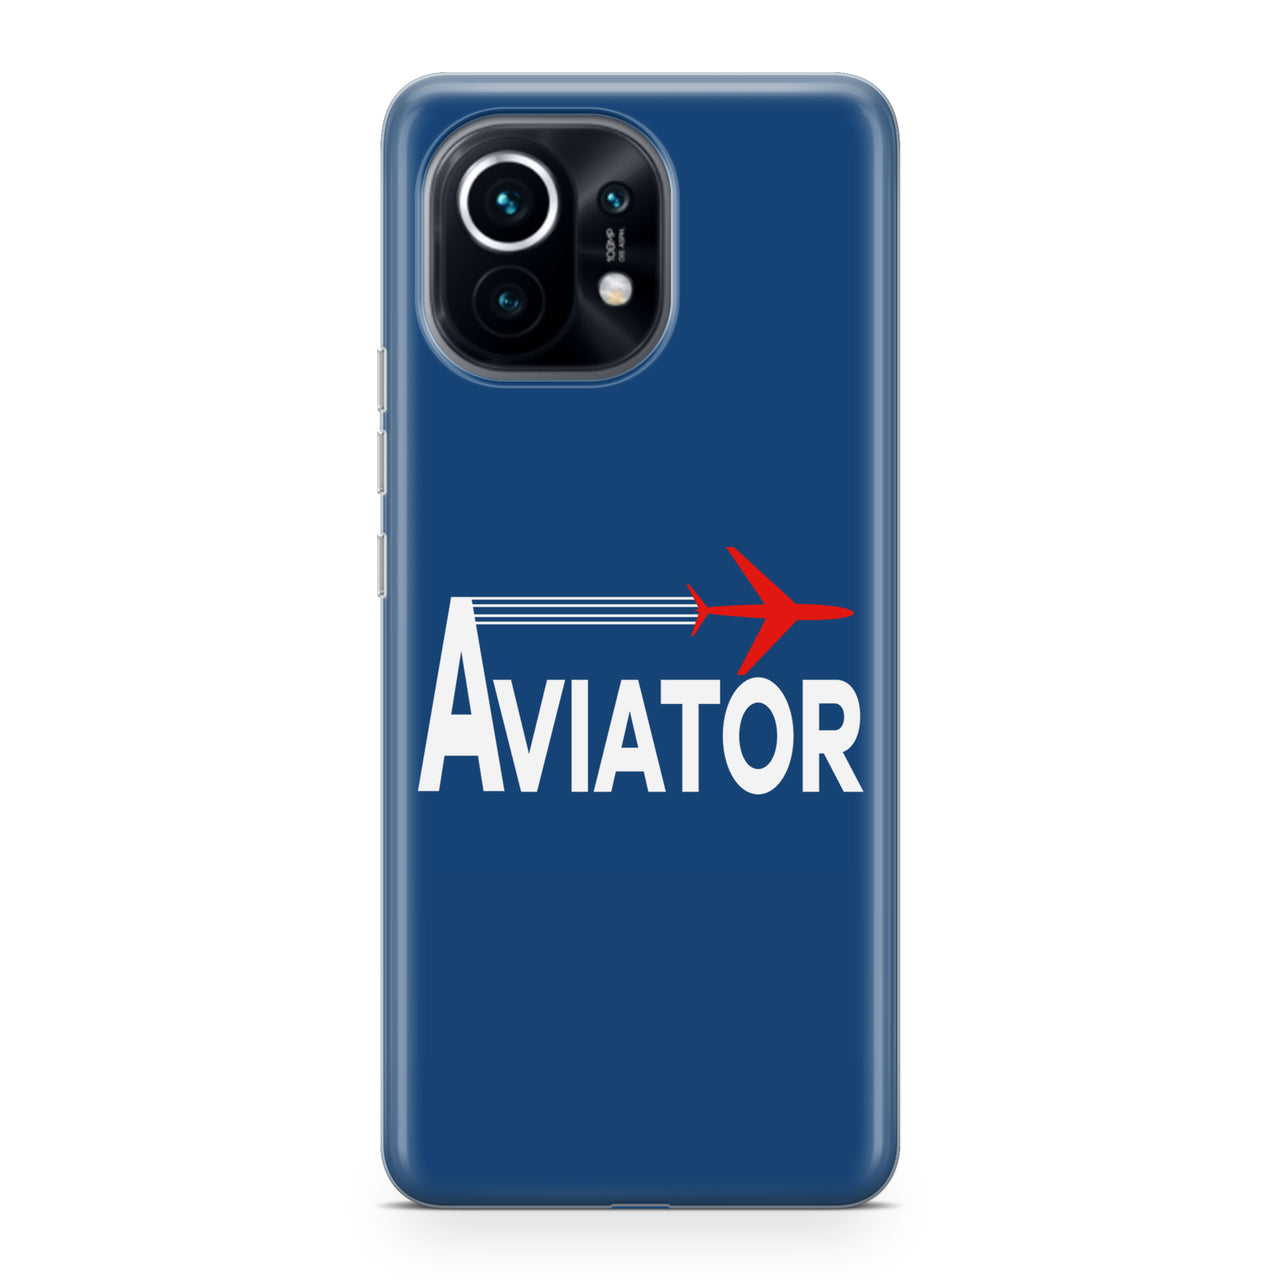 Aviator Designed Xiaomi Cases